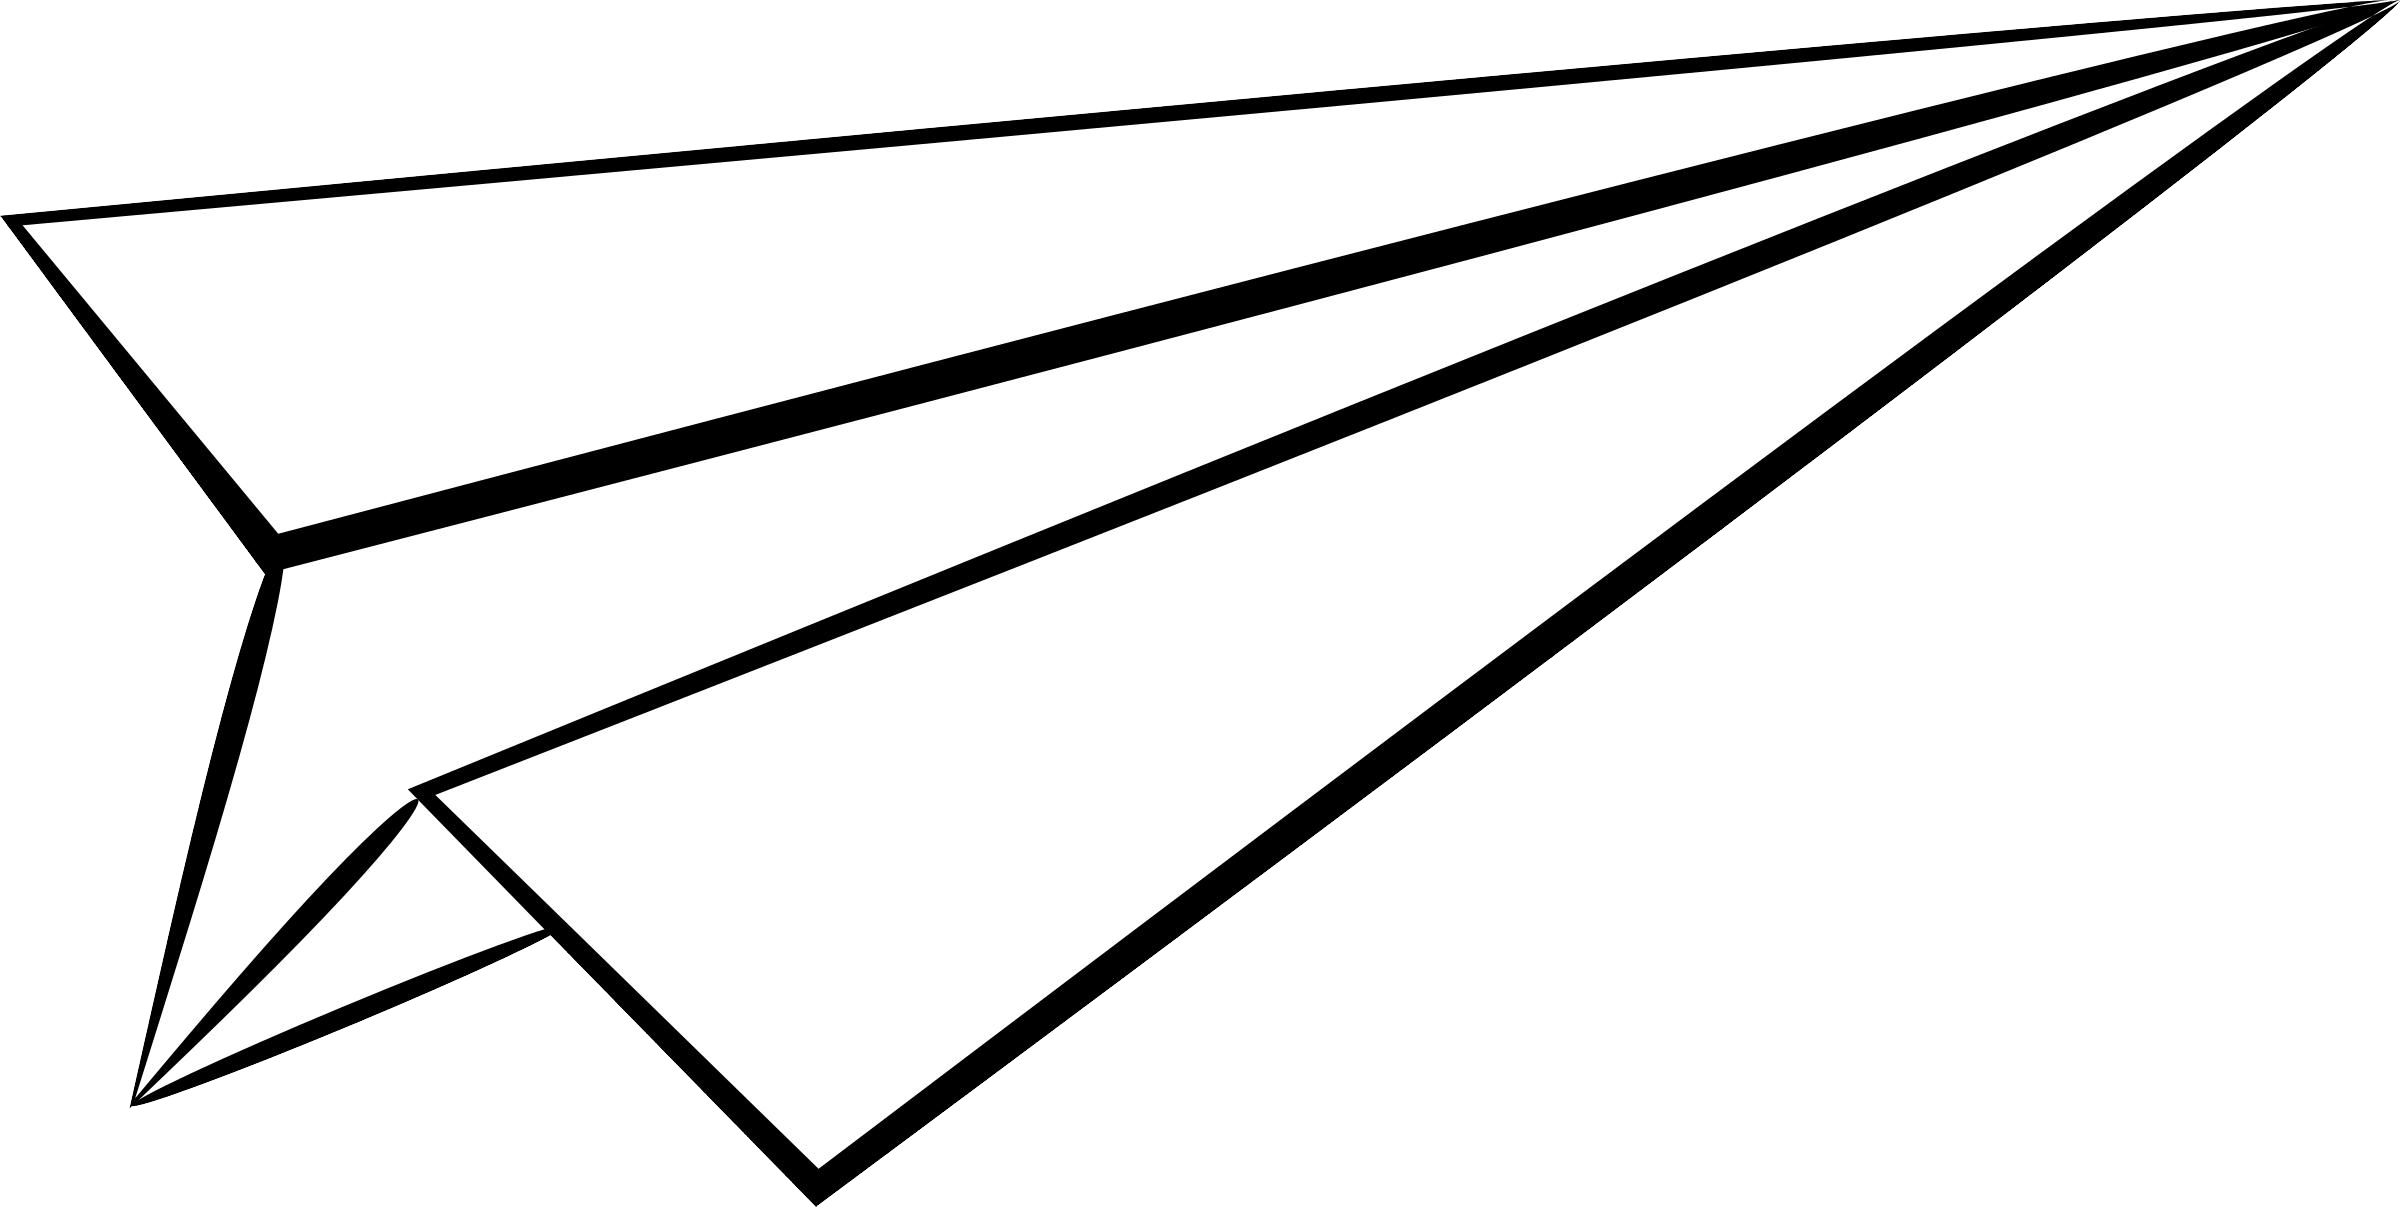 Papierowy samolot